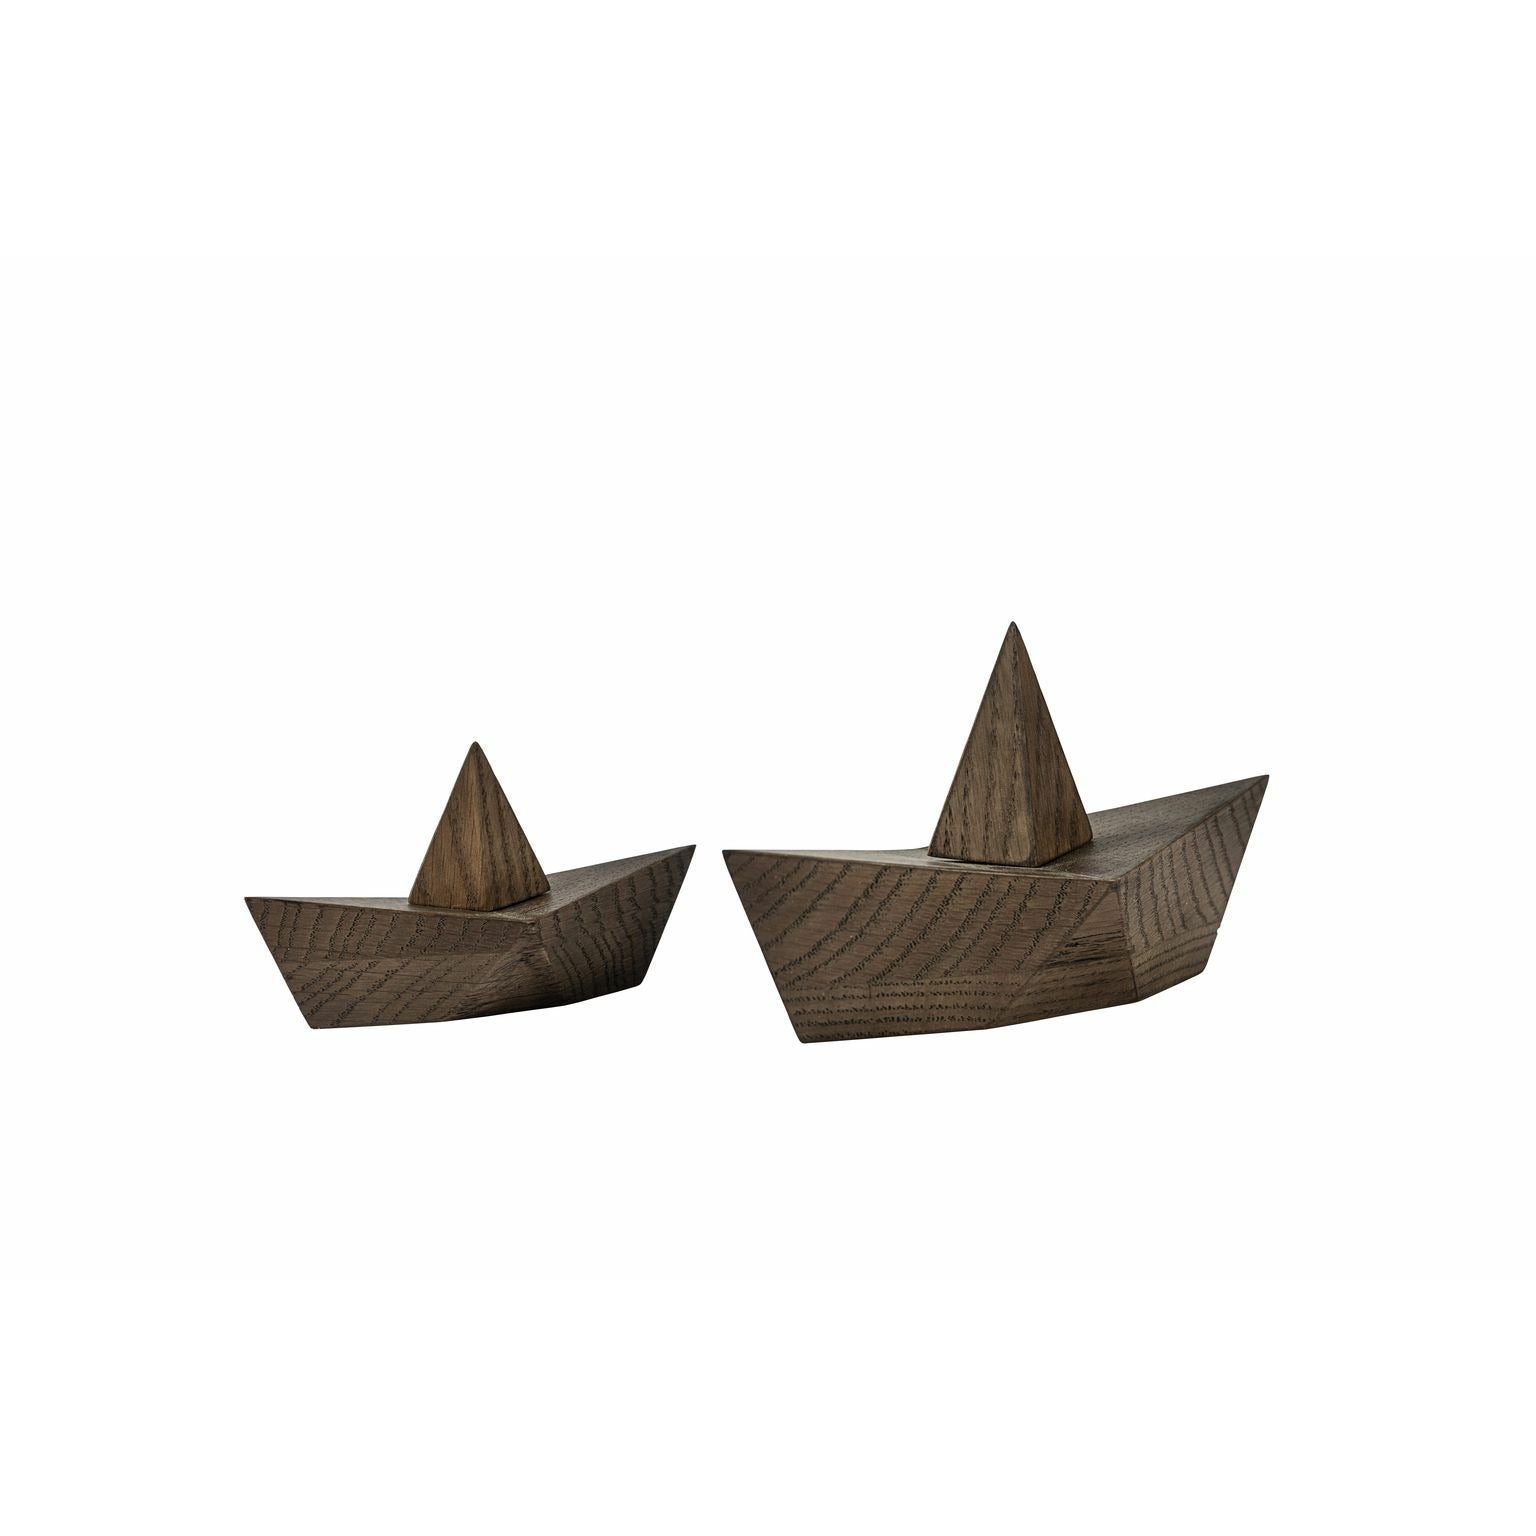 Boyhood Admirál Paper Boat Dekorativní postava malá, uzený dub